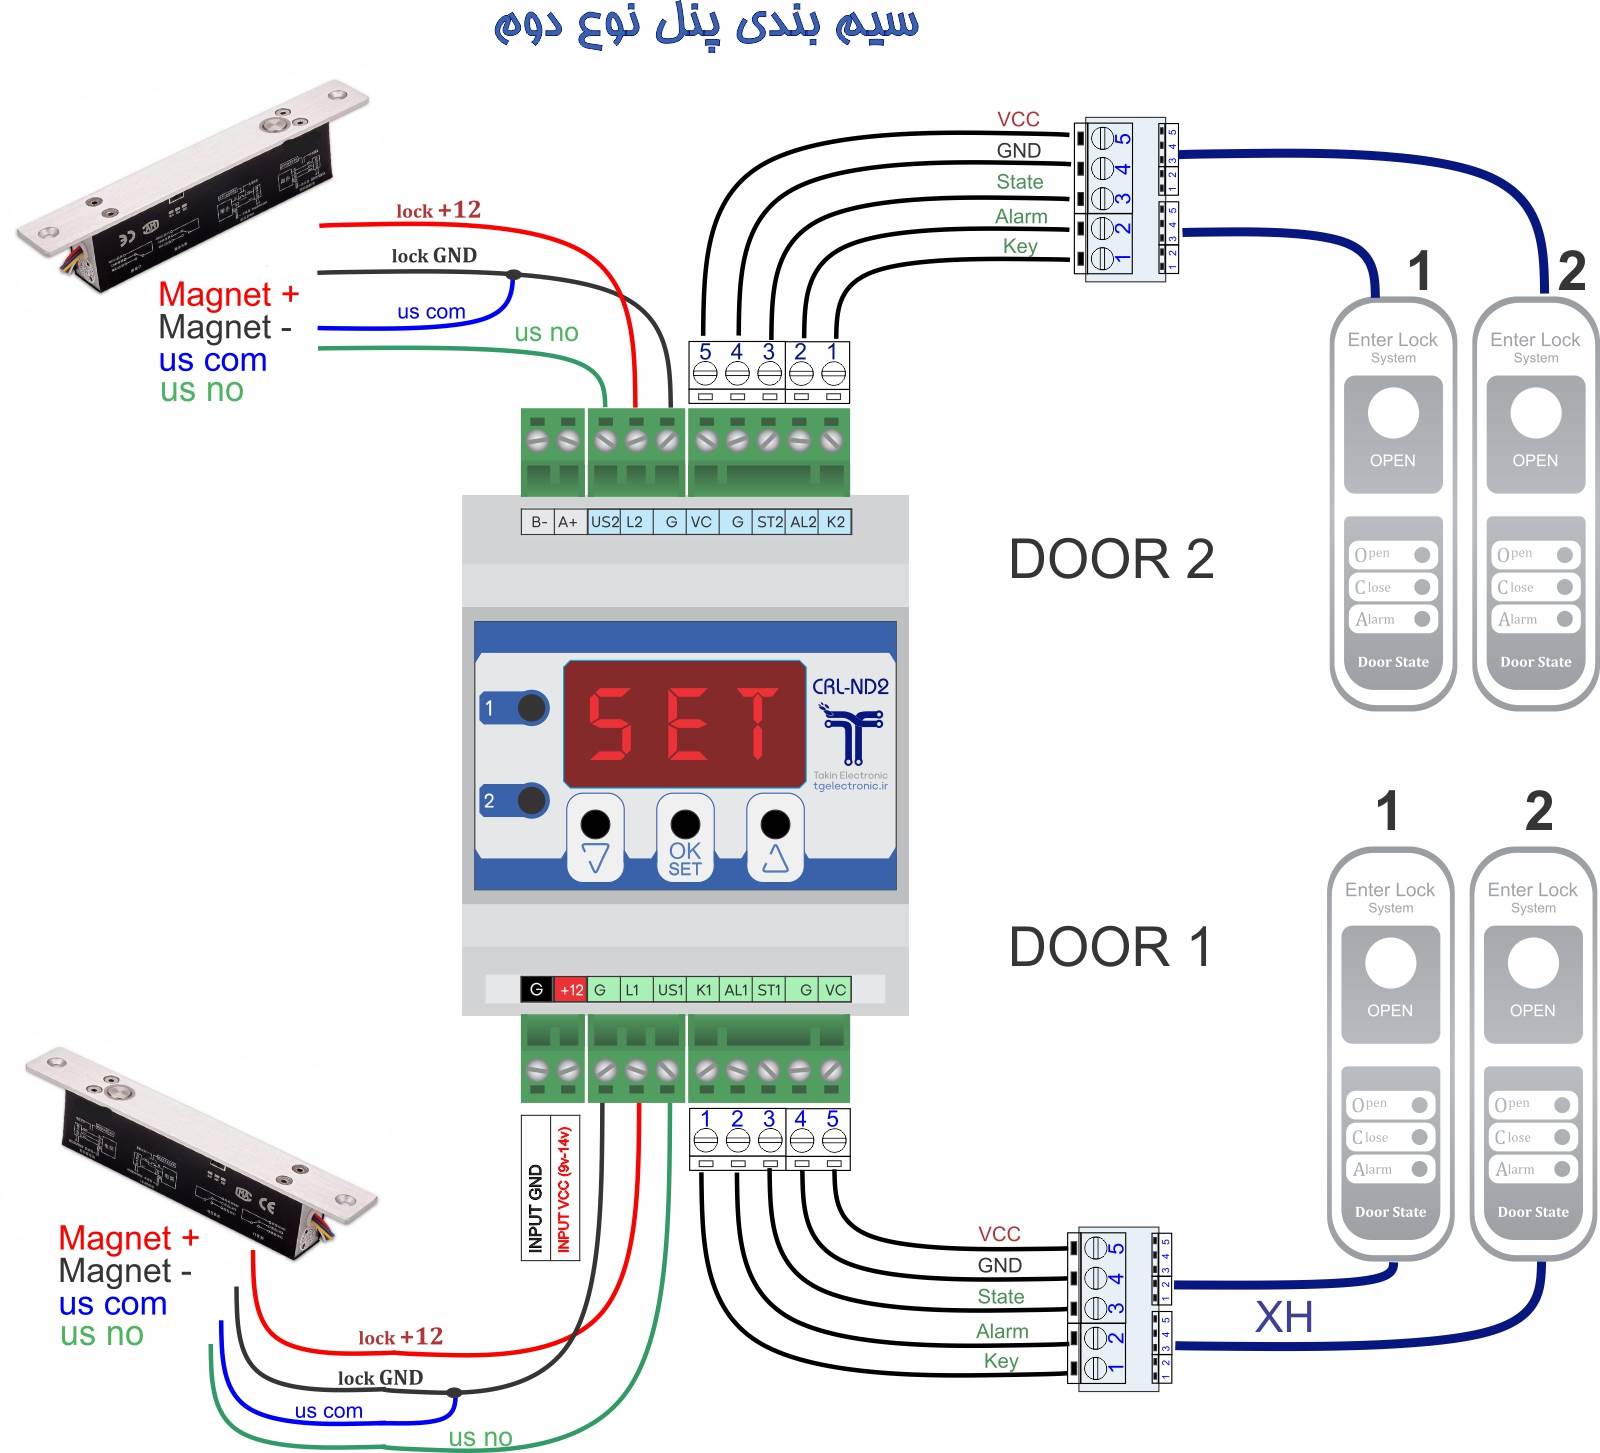 cleanroom-interlock-doors2-CRL-ND2-wiring